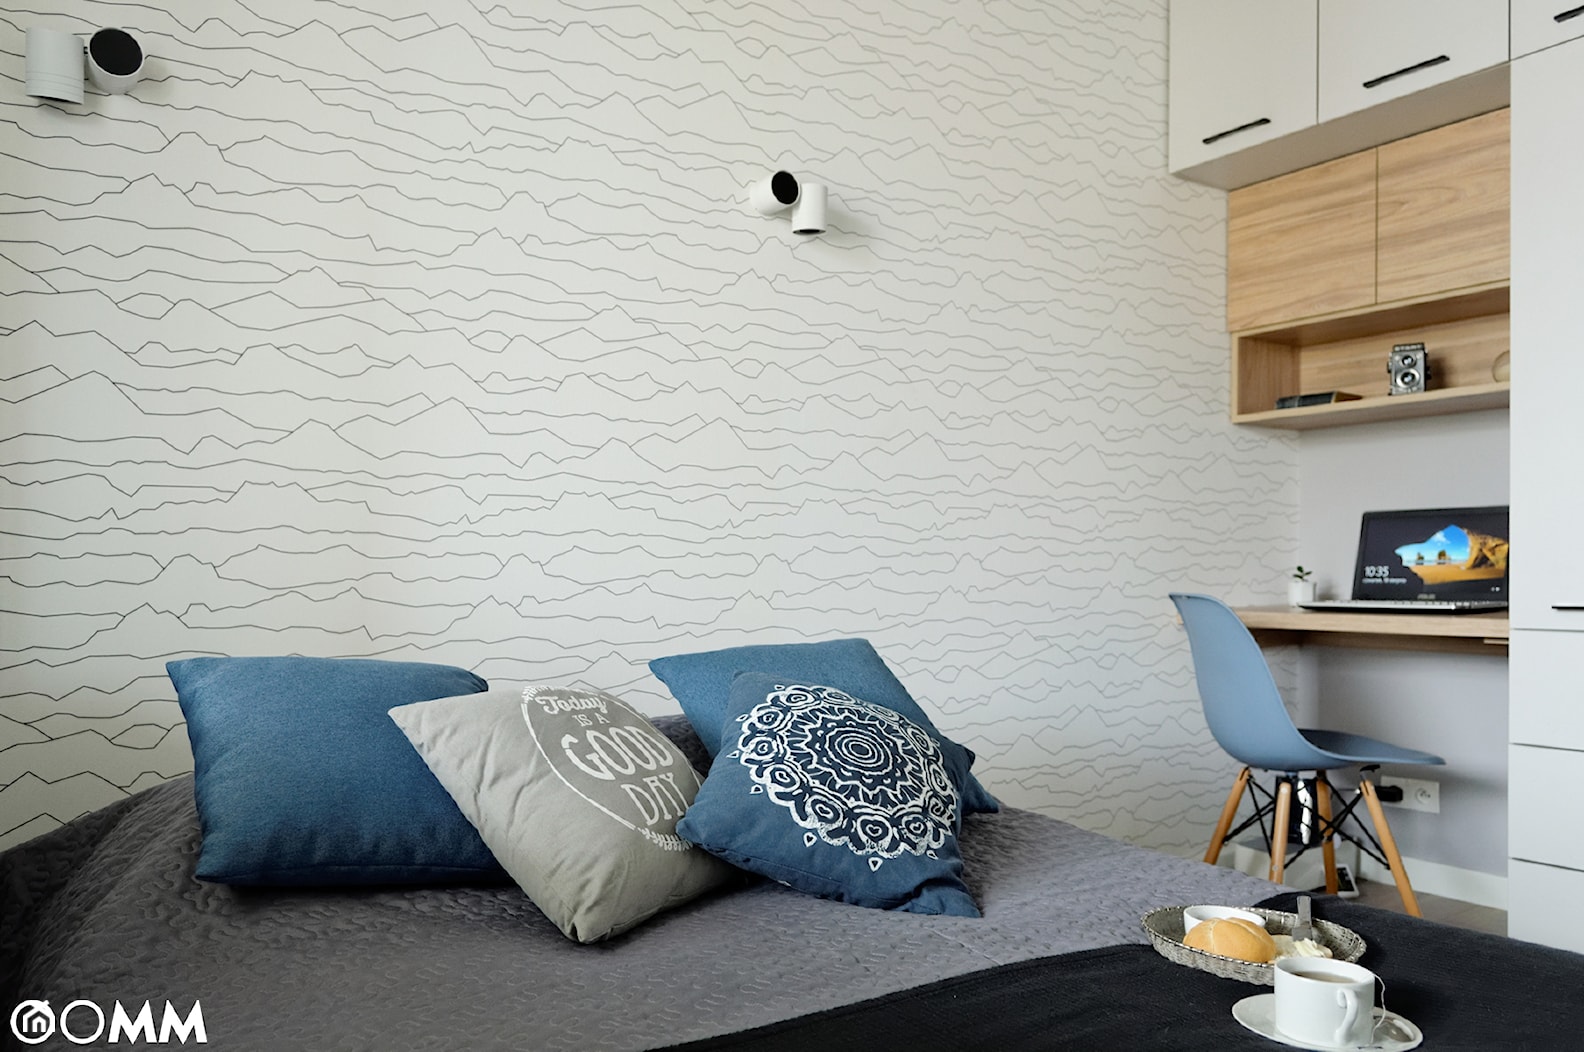 Sypialnia w małym mieszkaniu - zdjęcie od OOMM Monika Buzun architekt wnętrz - Homebook